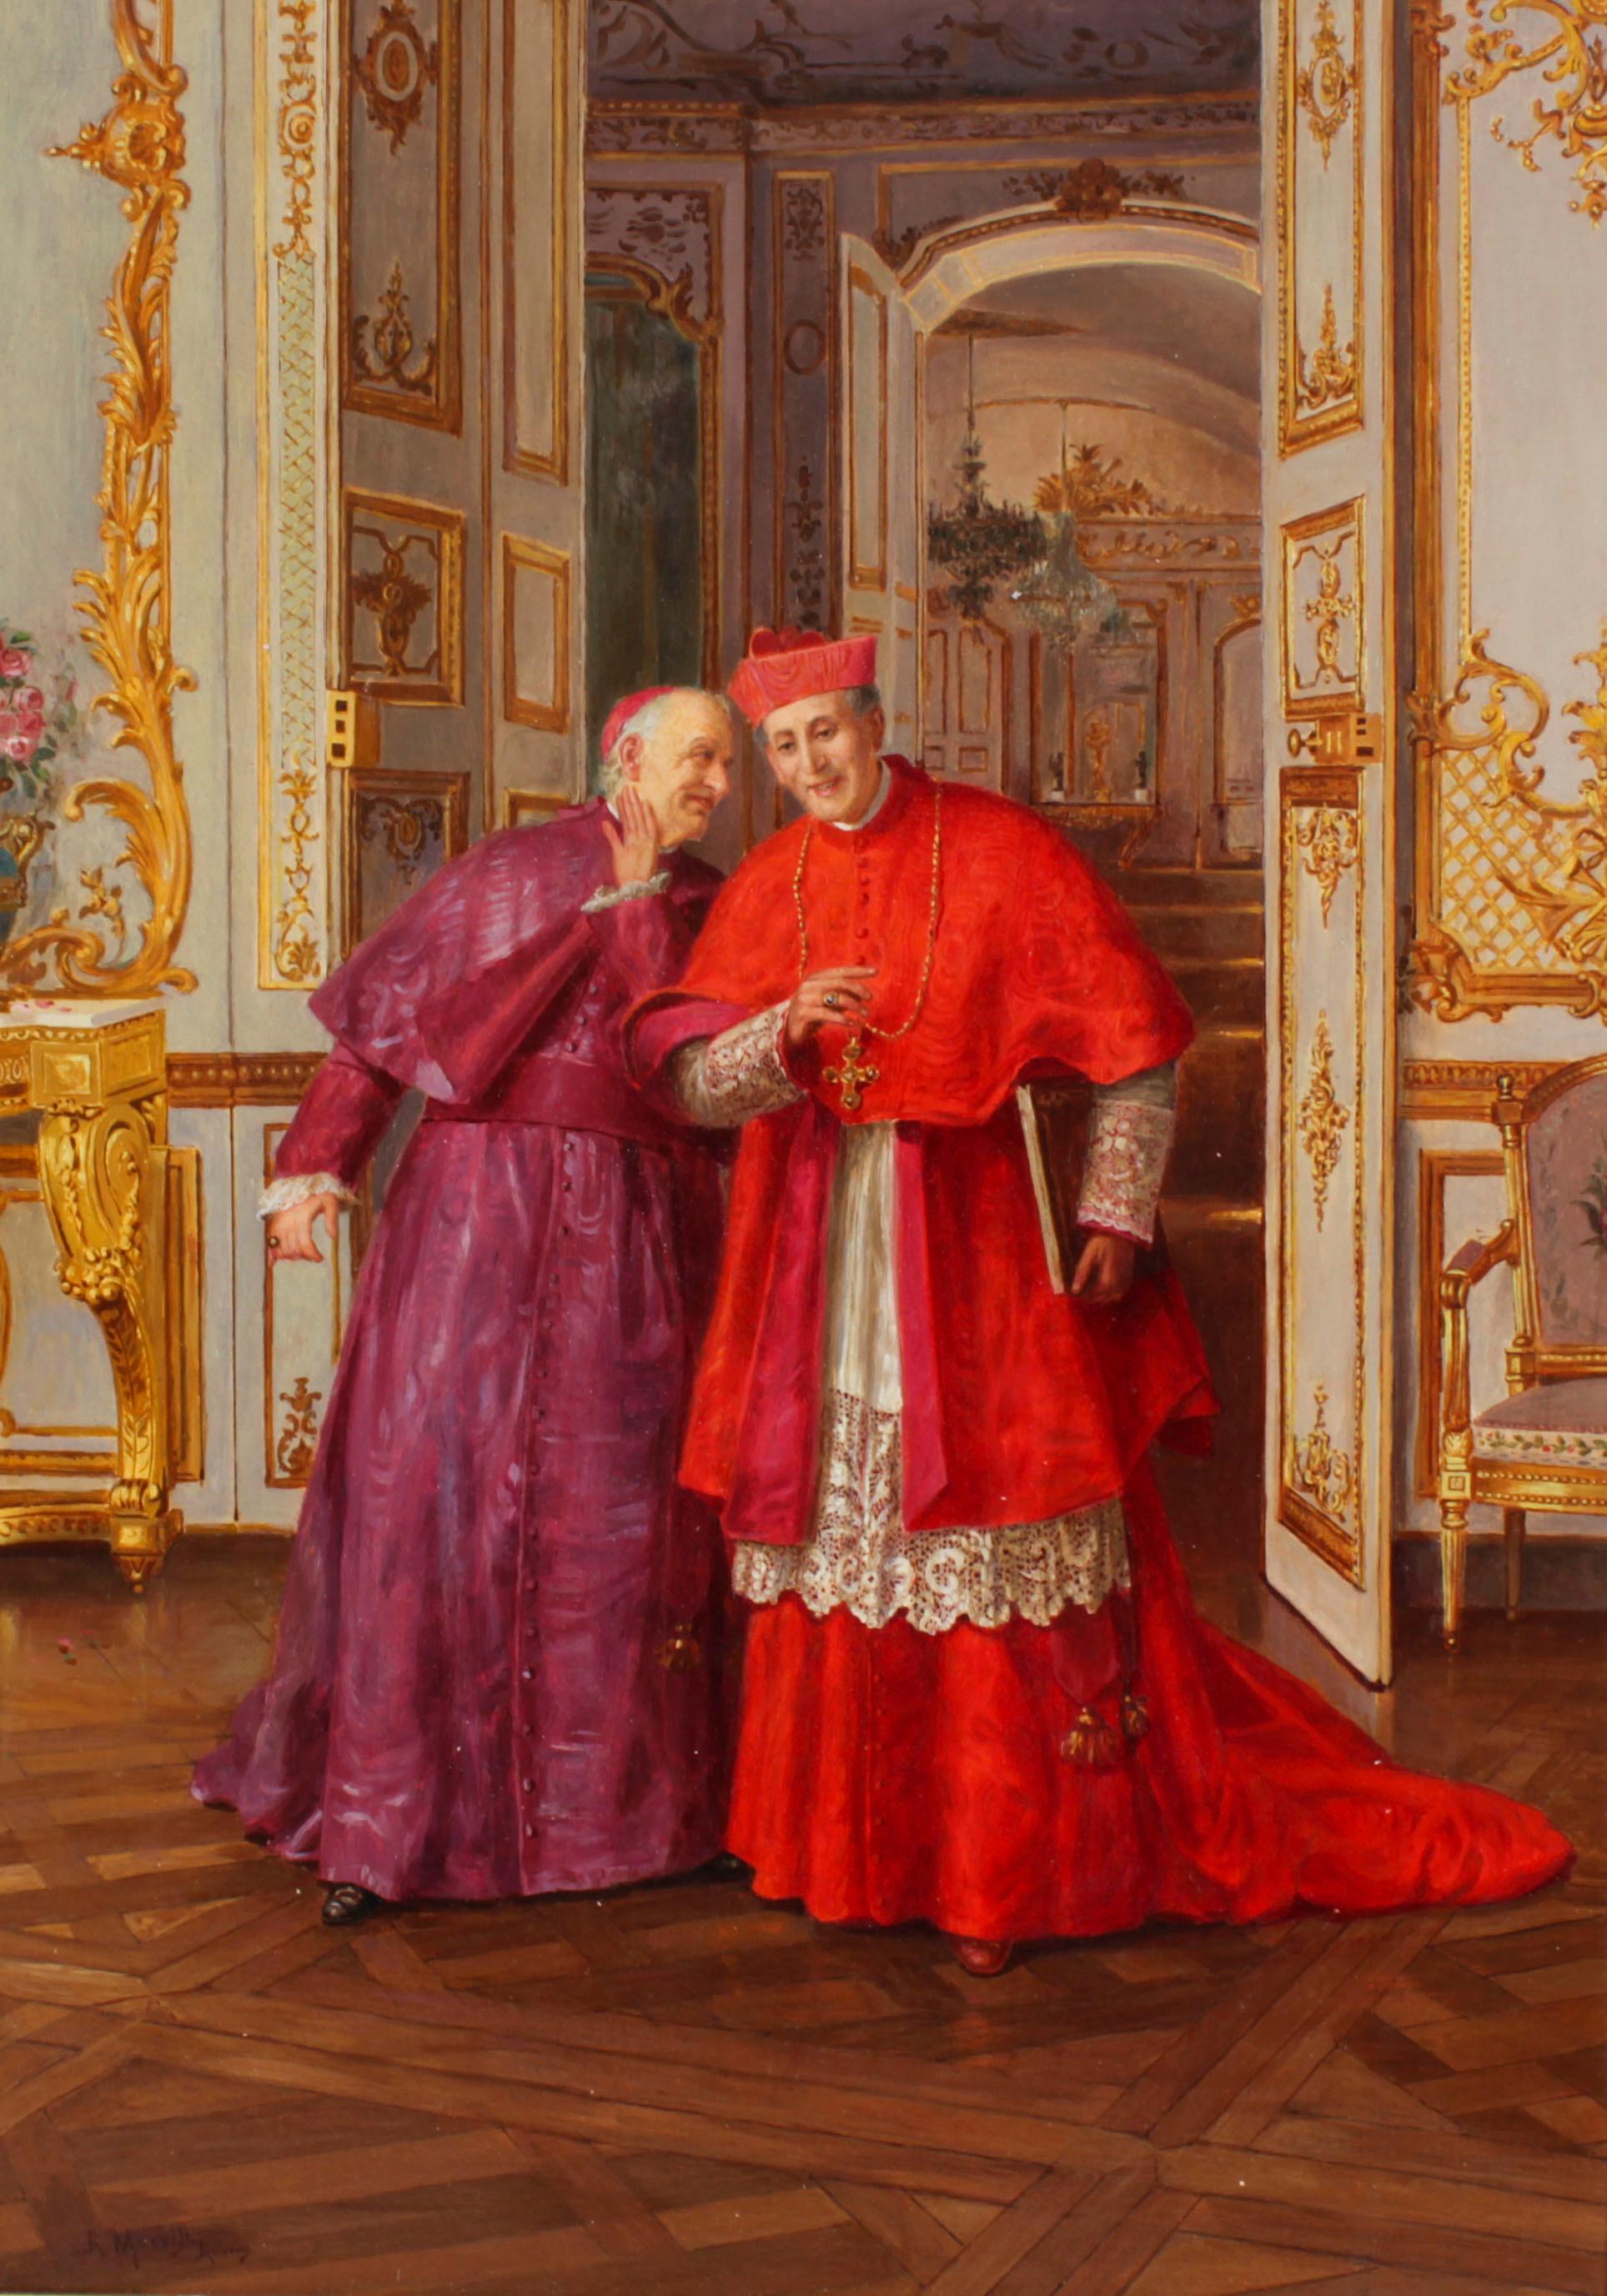 Il s'agit d'une magnifique huile sur toile italienne ancienne représentant un cardinal, intitulée 